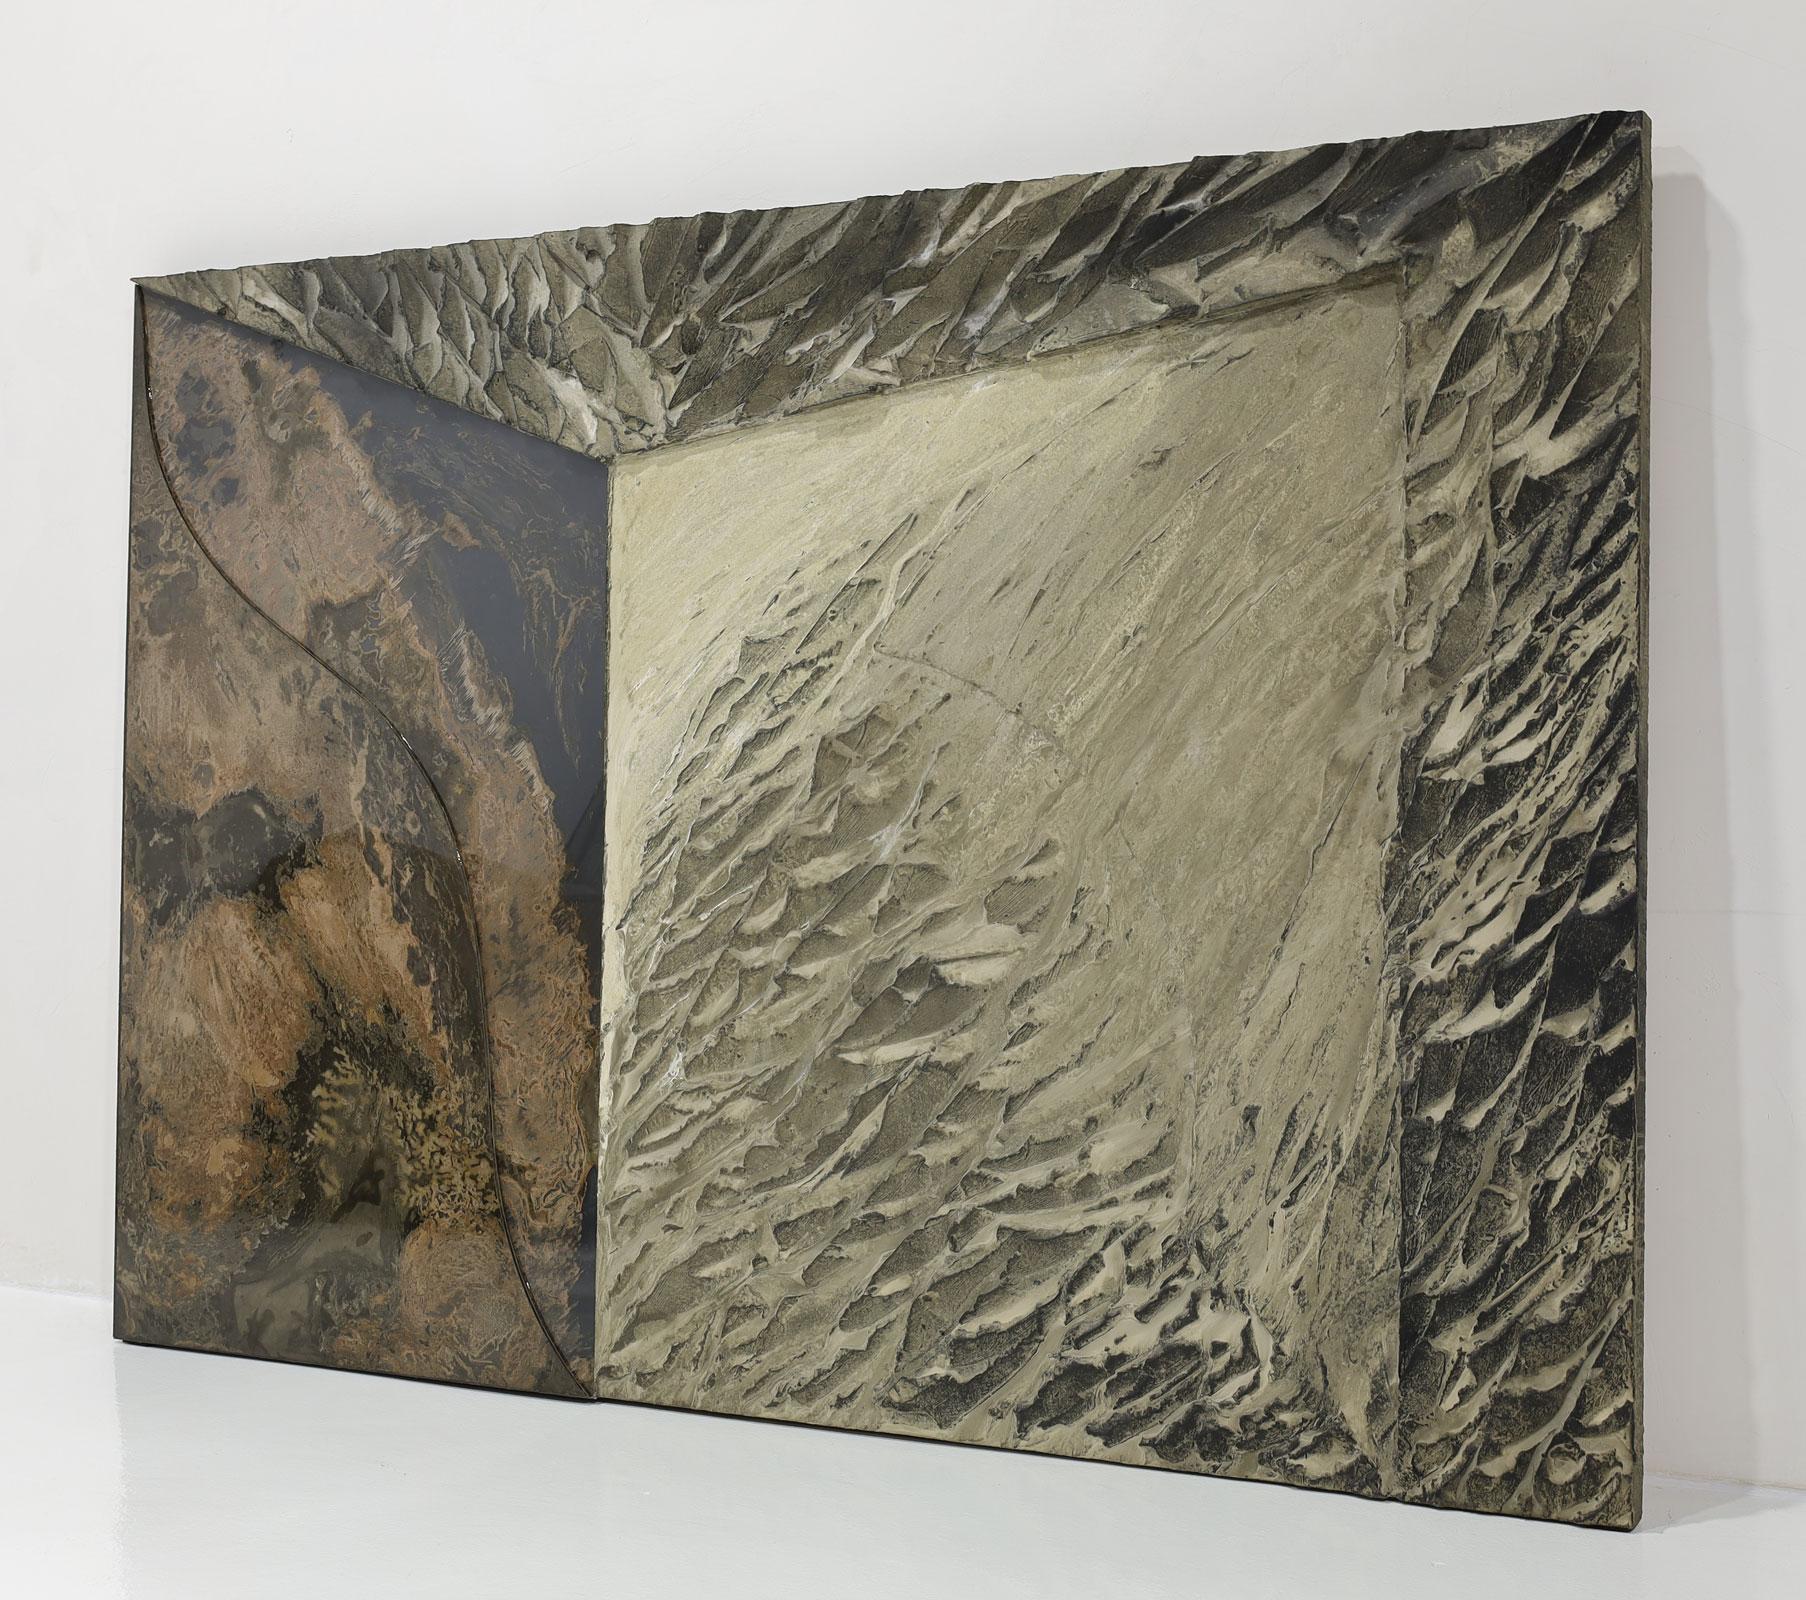 Una bellissima opera d'arte in grande scala di Laddie John Dill.  Le opere sono composte da cemento, vetro, legno e pigmenti applicati su tela. Firmato e datato al verso.
Dal sito web dell'artista:
Laddie John Dill, un artista di Los Angeles, ha